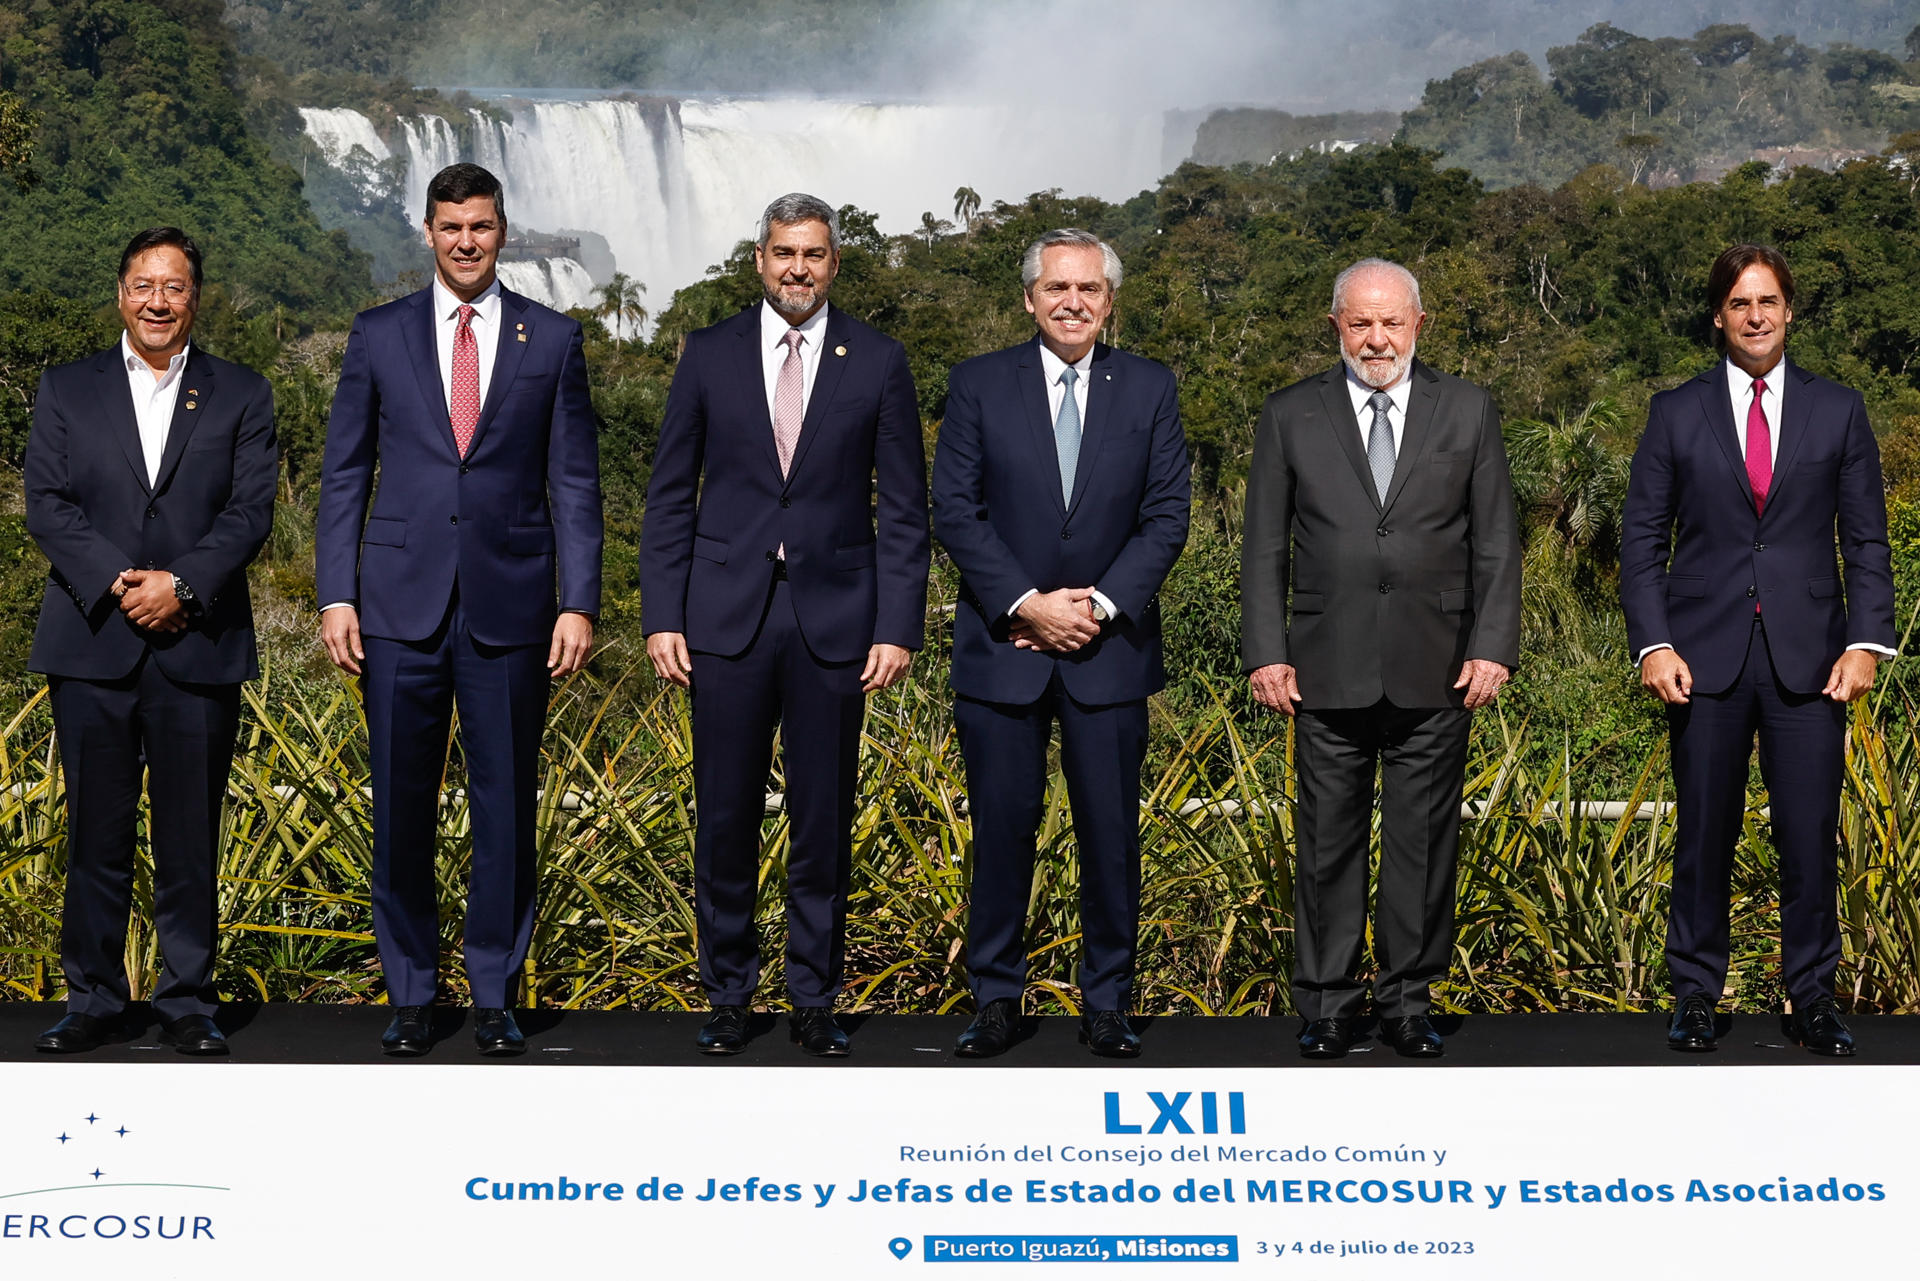 El Mercosur recupera el liderazgo de Lula